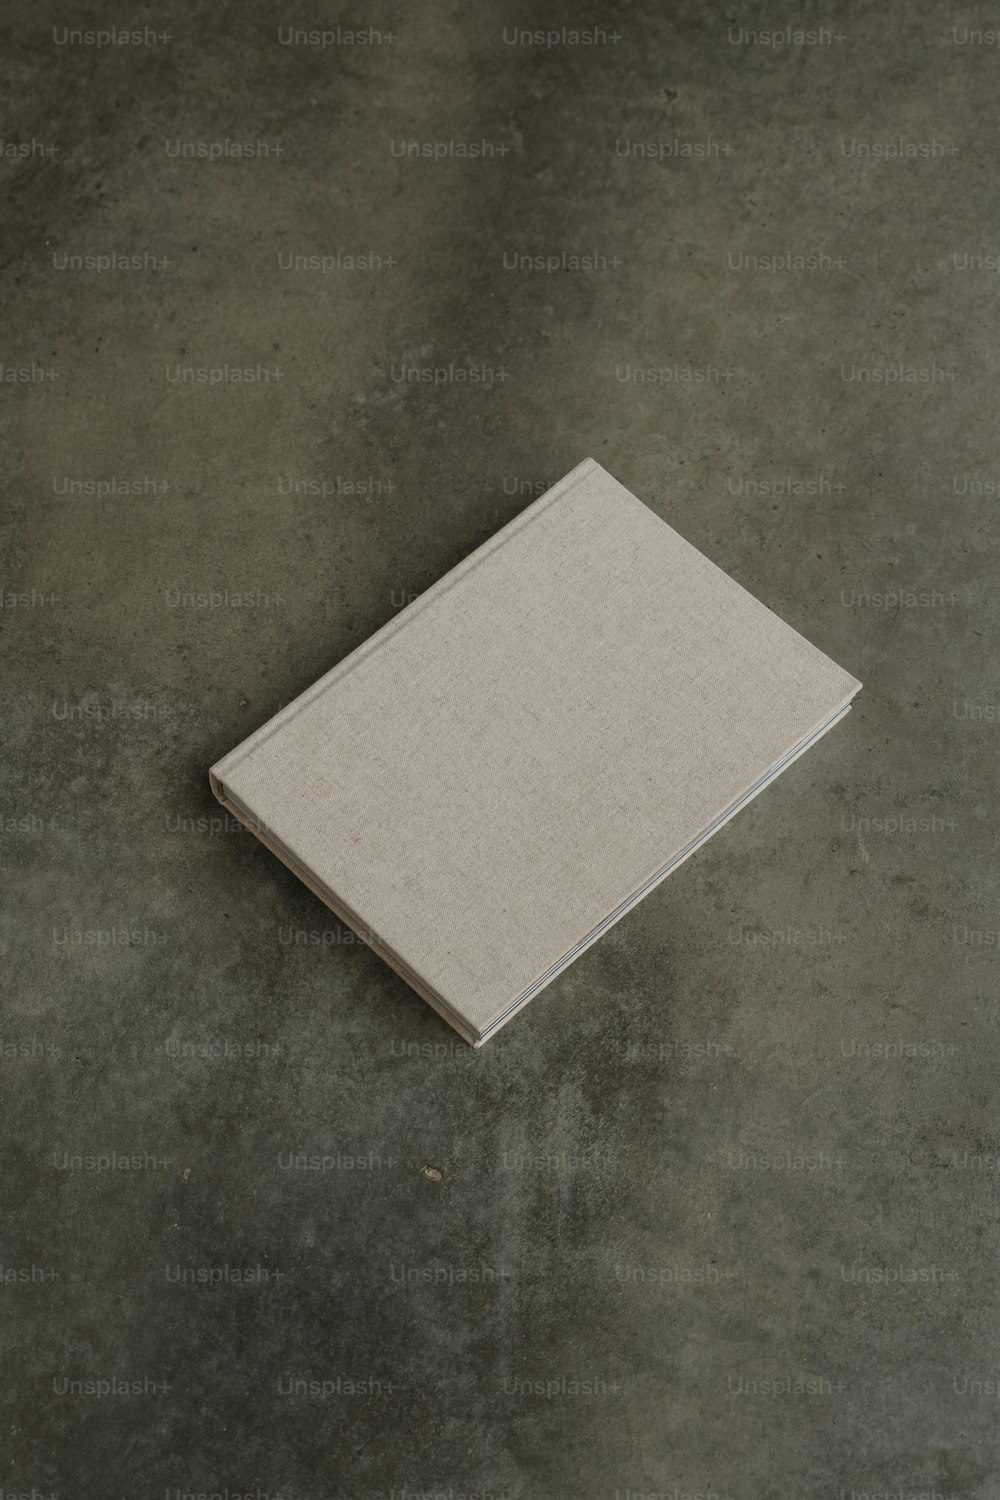 시멘트 바닥 위에 놓여 있는 하얀 책